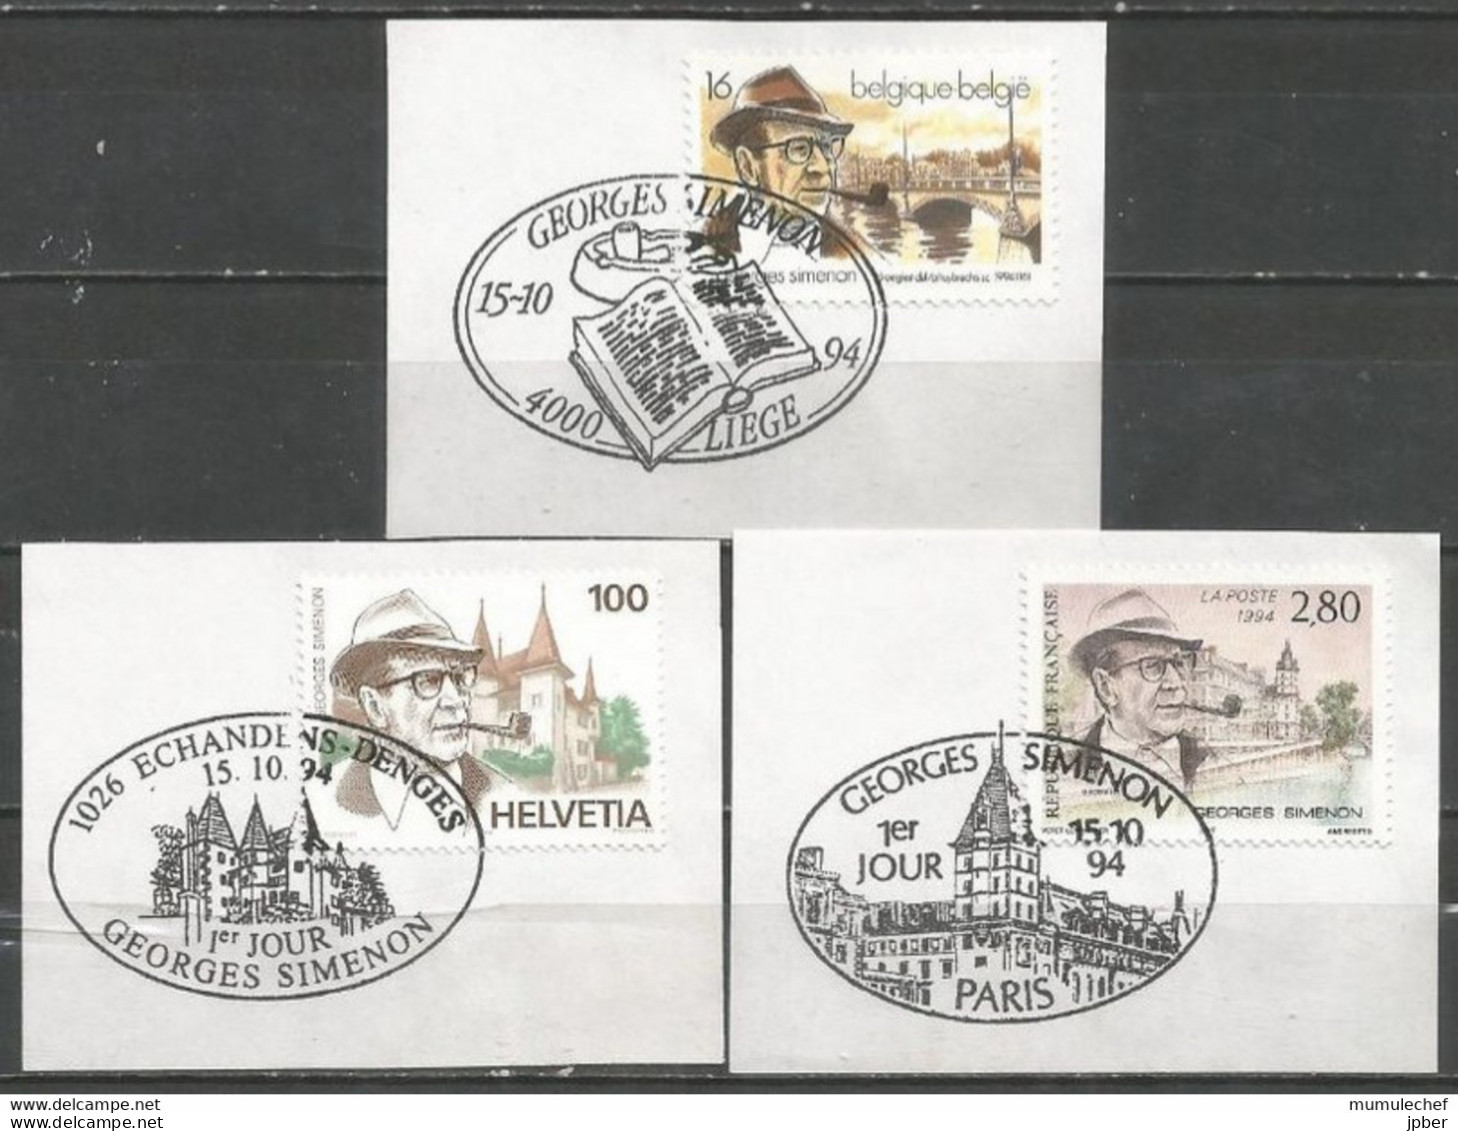 Belgique-France-Suisse - Emission Commune - Georges Simenon - Obl. 1er Jour Liège - Paris - Echandens-Denges - Used Stamps